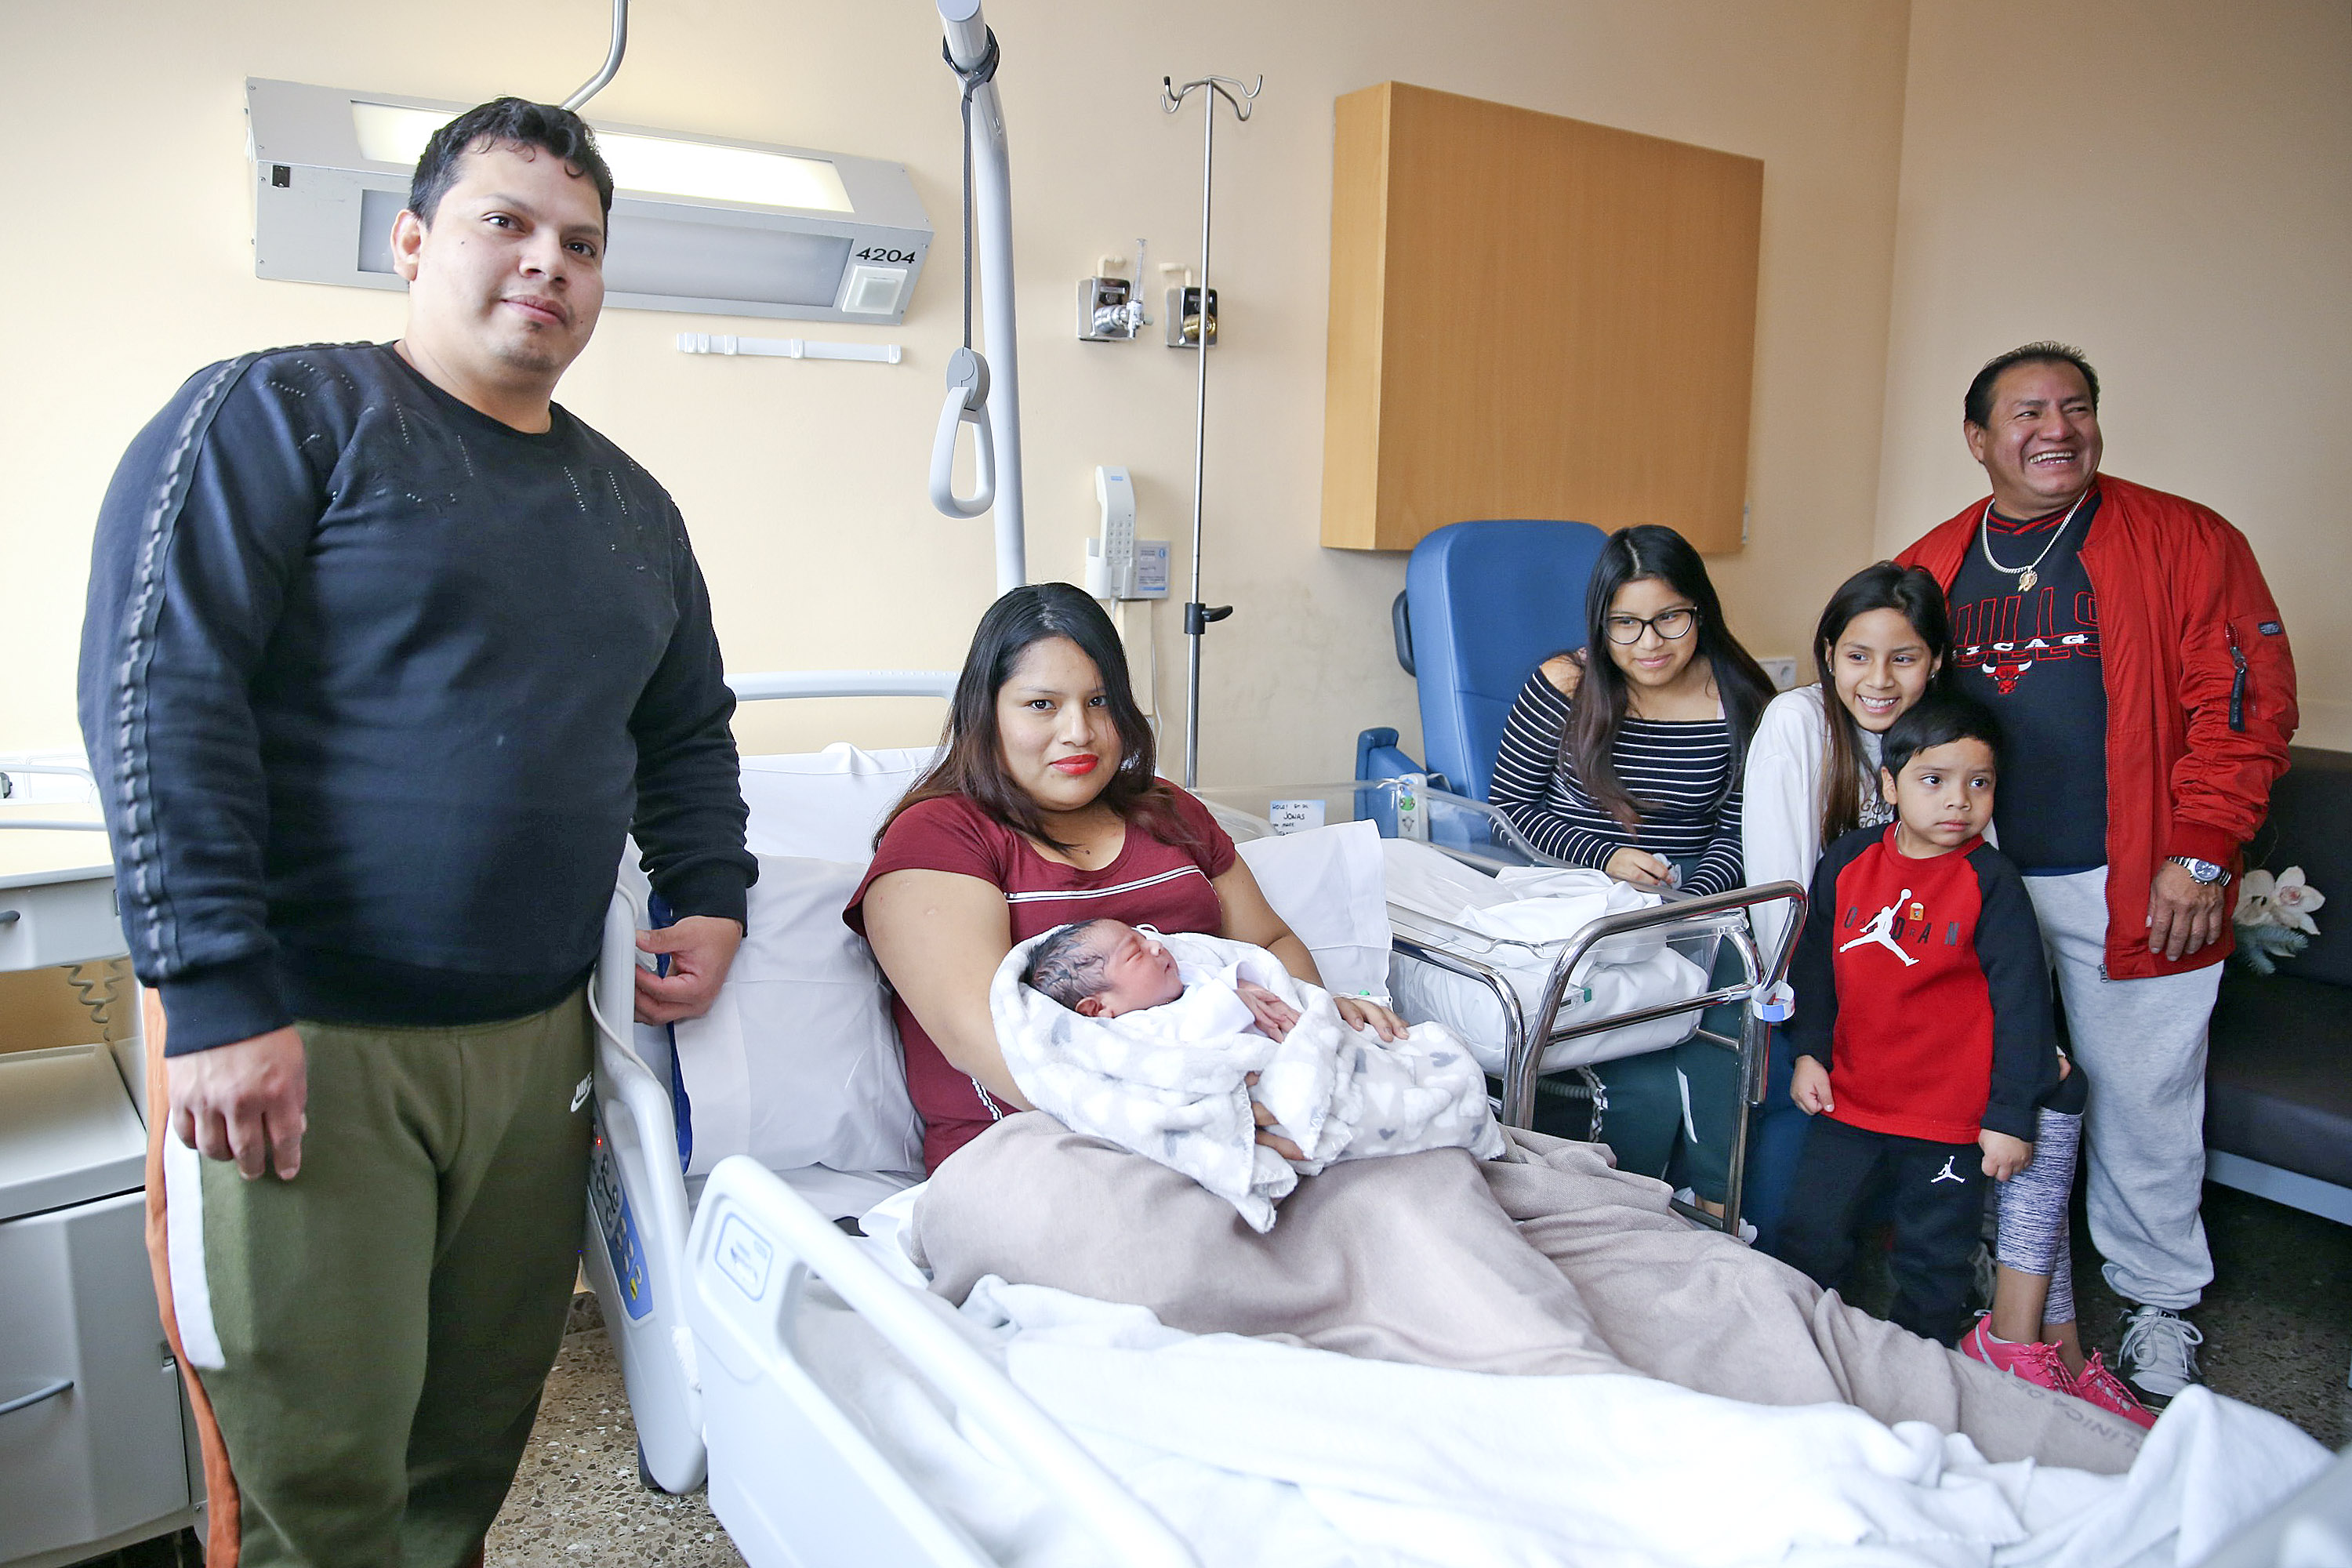 La família Medina Matías, aquest dijous al matí a l’Hospital Universitari de Vic amb els seus quatre fills, el petit Jonás amb la mare, i l’avi